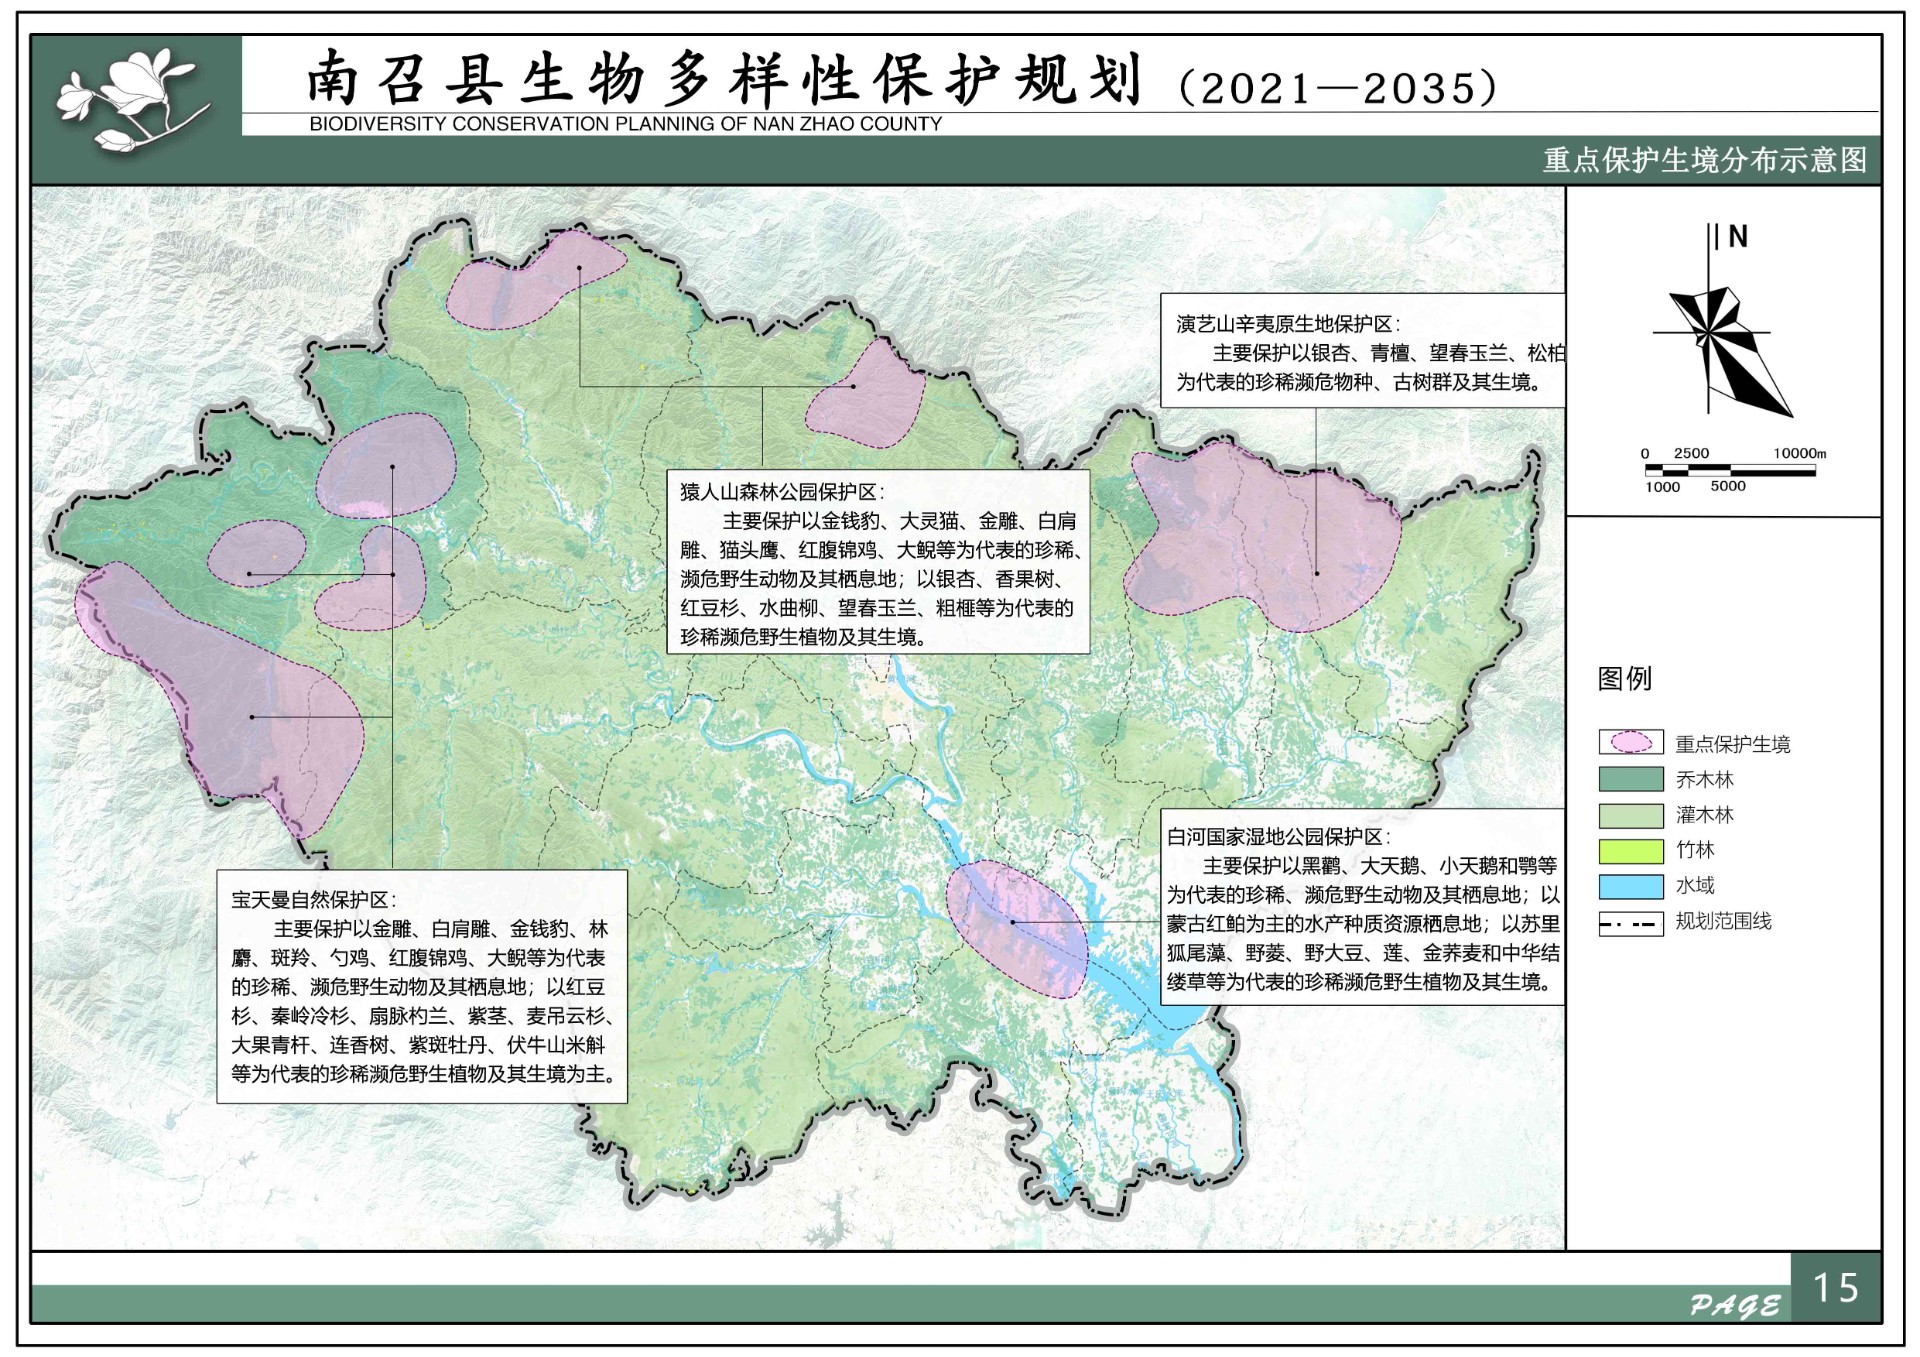 南召县生物多样性保护规划